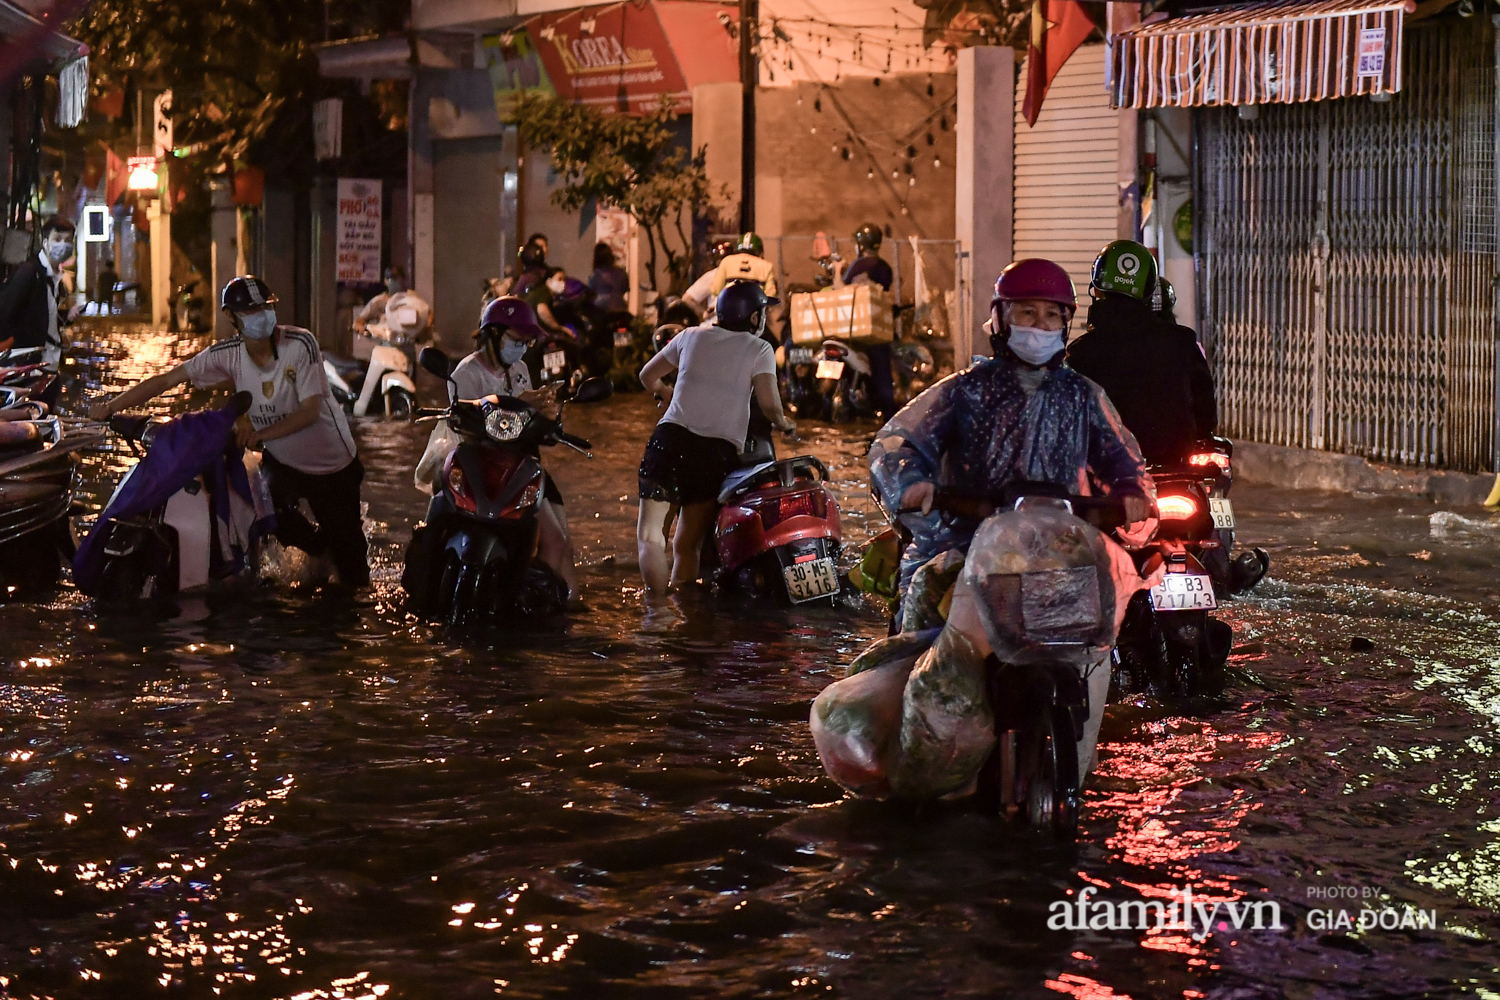 Mưa lớn chưa đầy 1 giờ đồng hồ, đường phố Hà Nội ngập như sông - Ảnh 13.